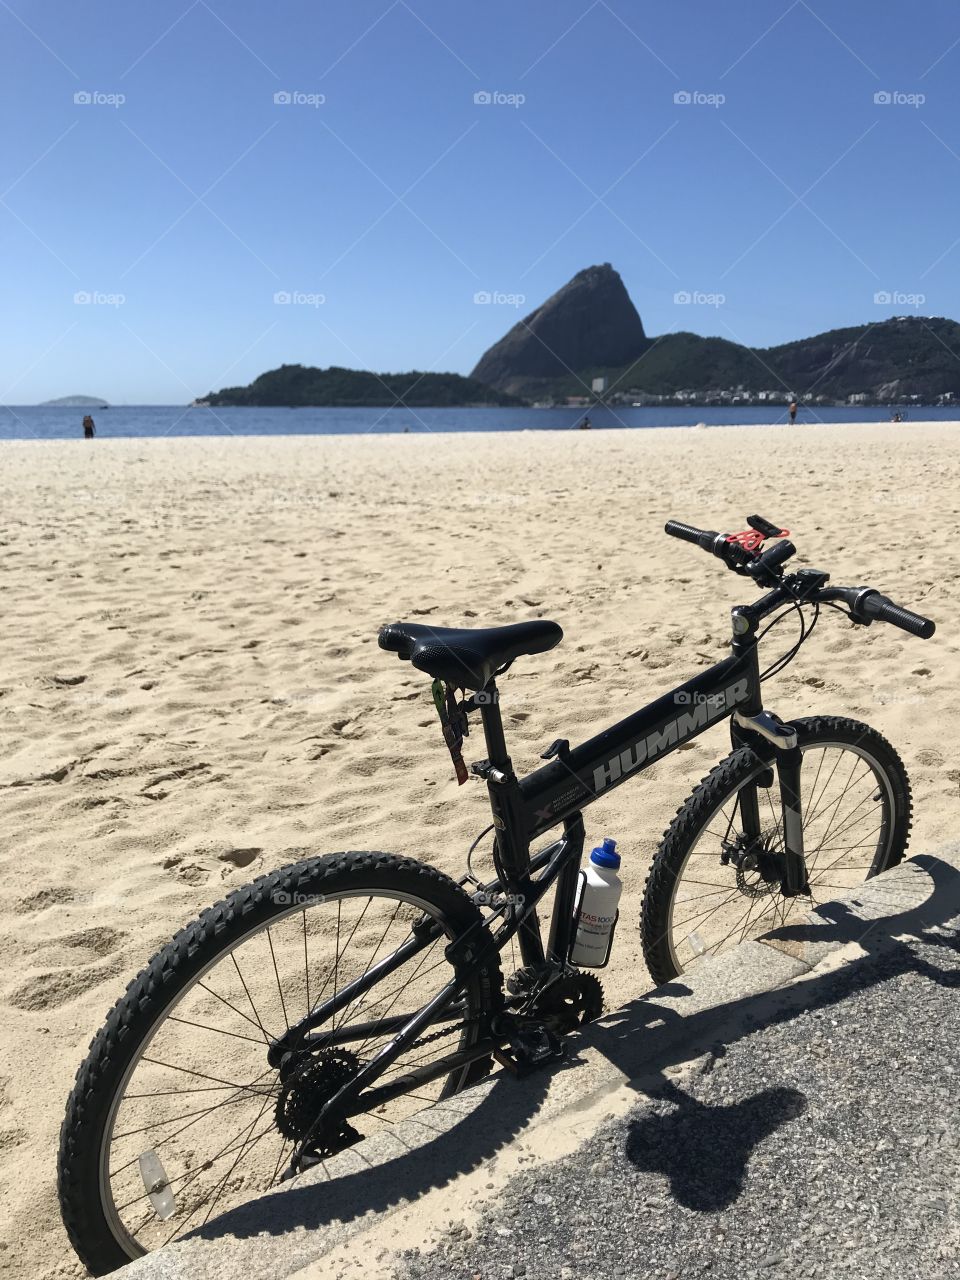 Passeando de bike pelo Rio. Pão de Açúcar.